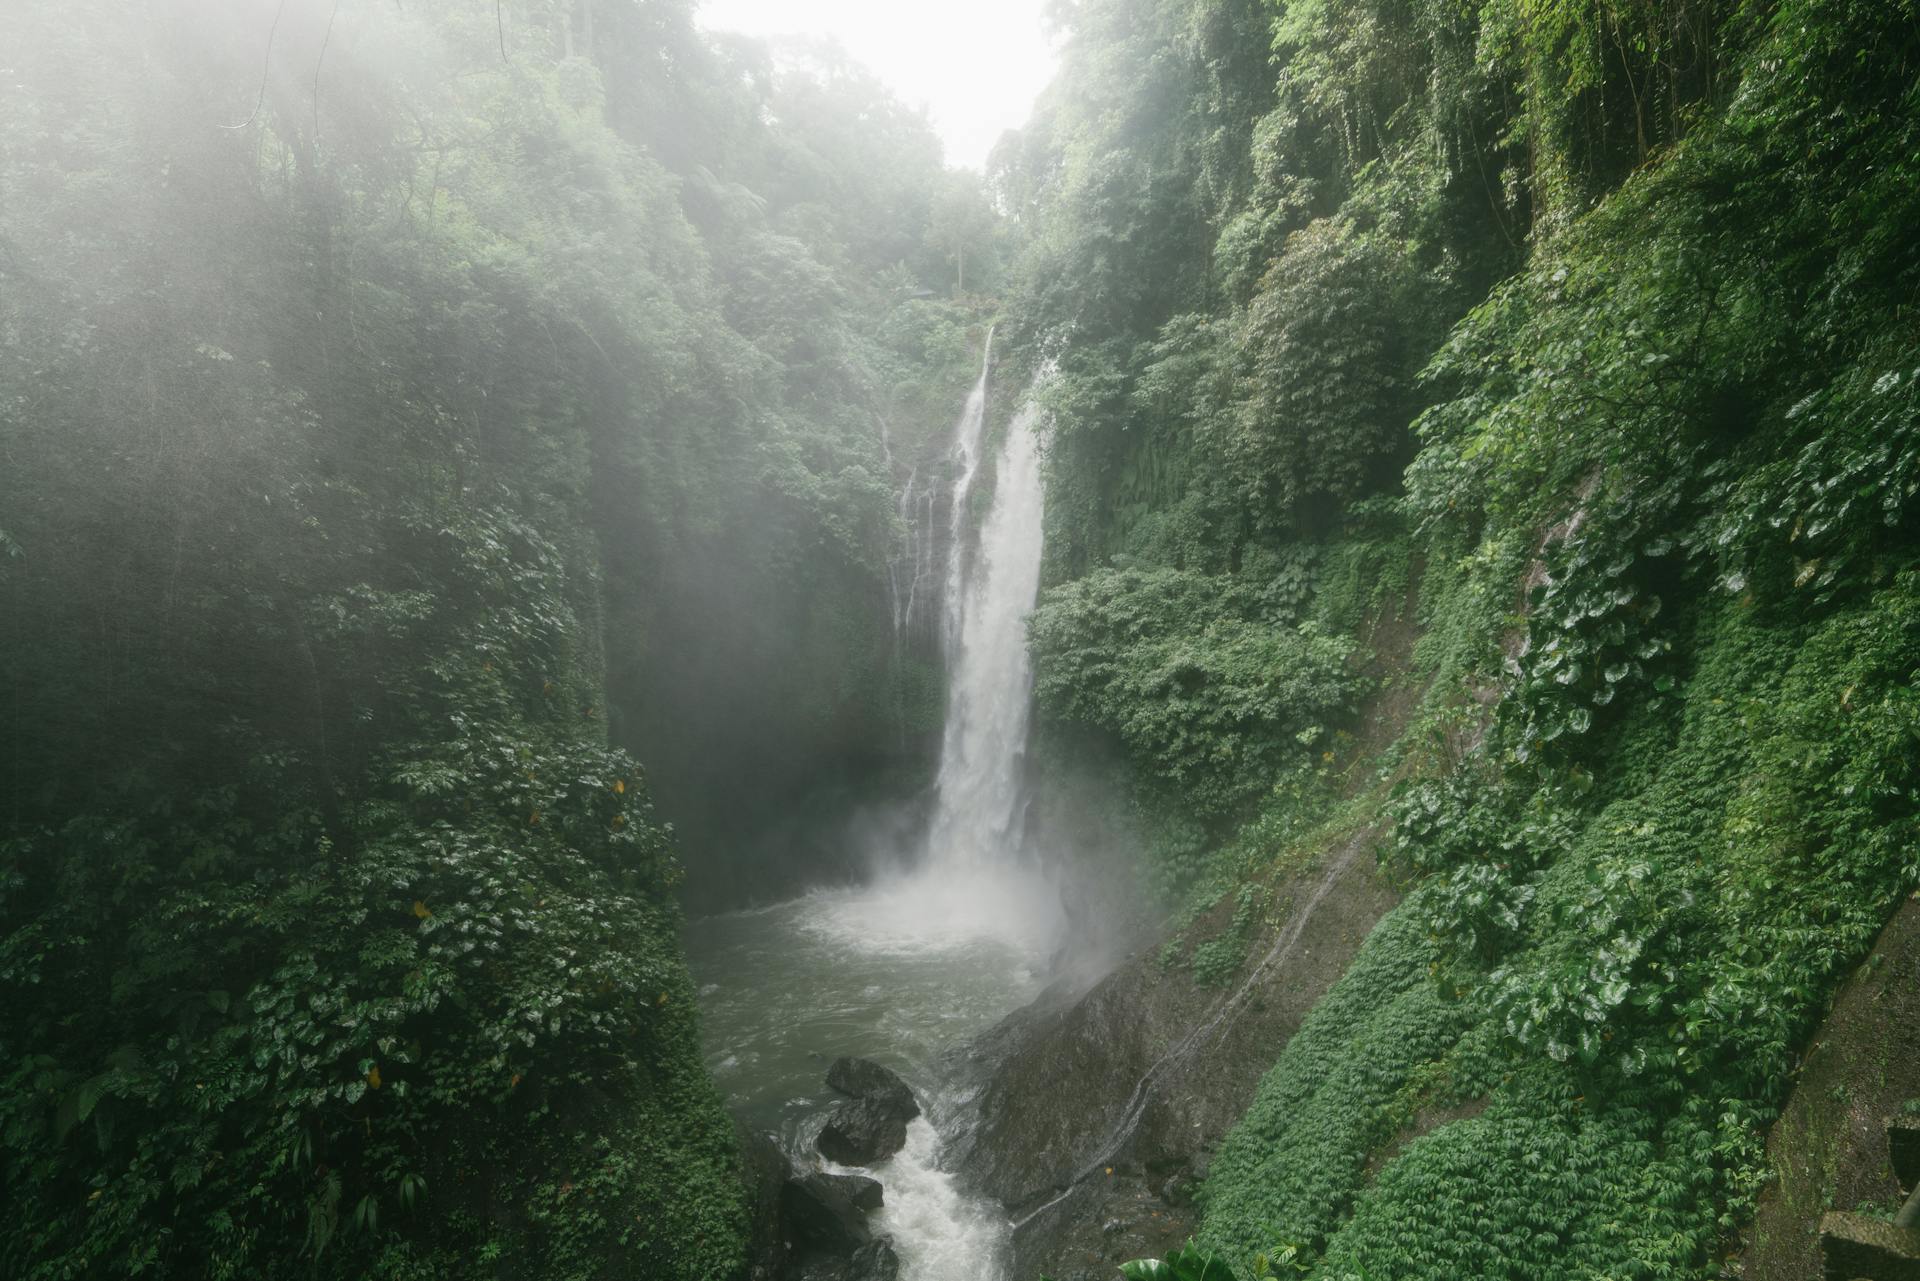 Wonderful Aling Aling Waterfall among lush greenery of Sambangan mountainous area on Bali Island